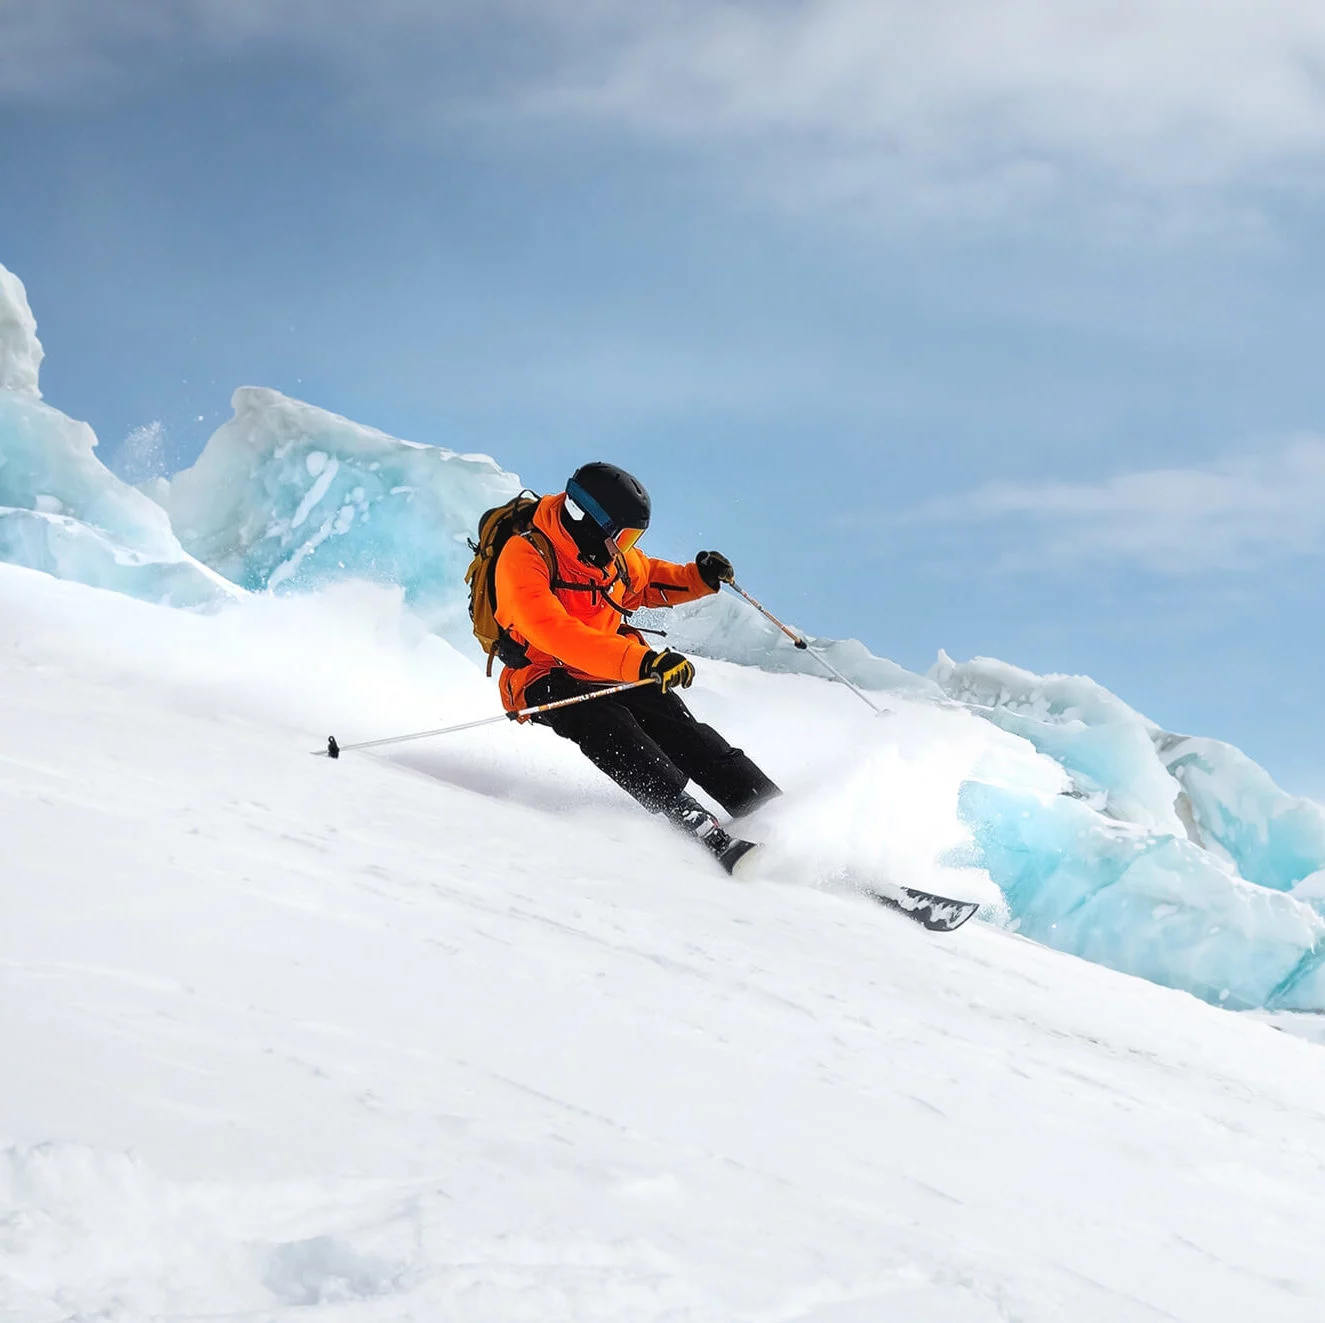 assurance professionnelle pour moniteurs et personnel encadrant, dont les moniteurs de ski